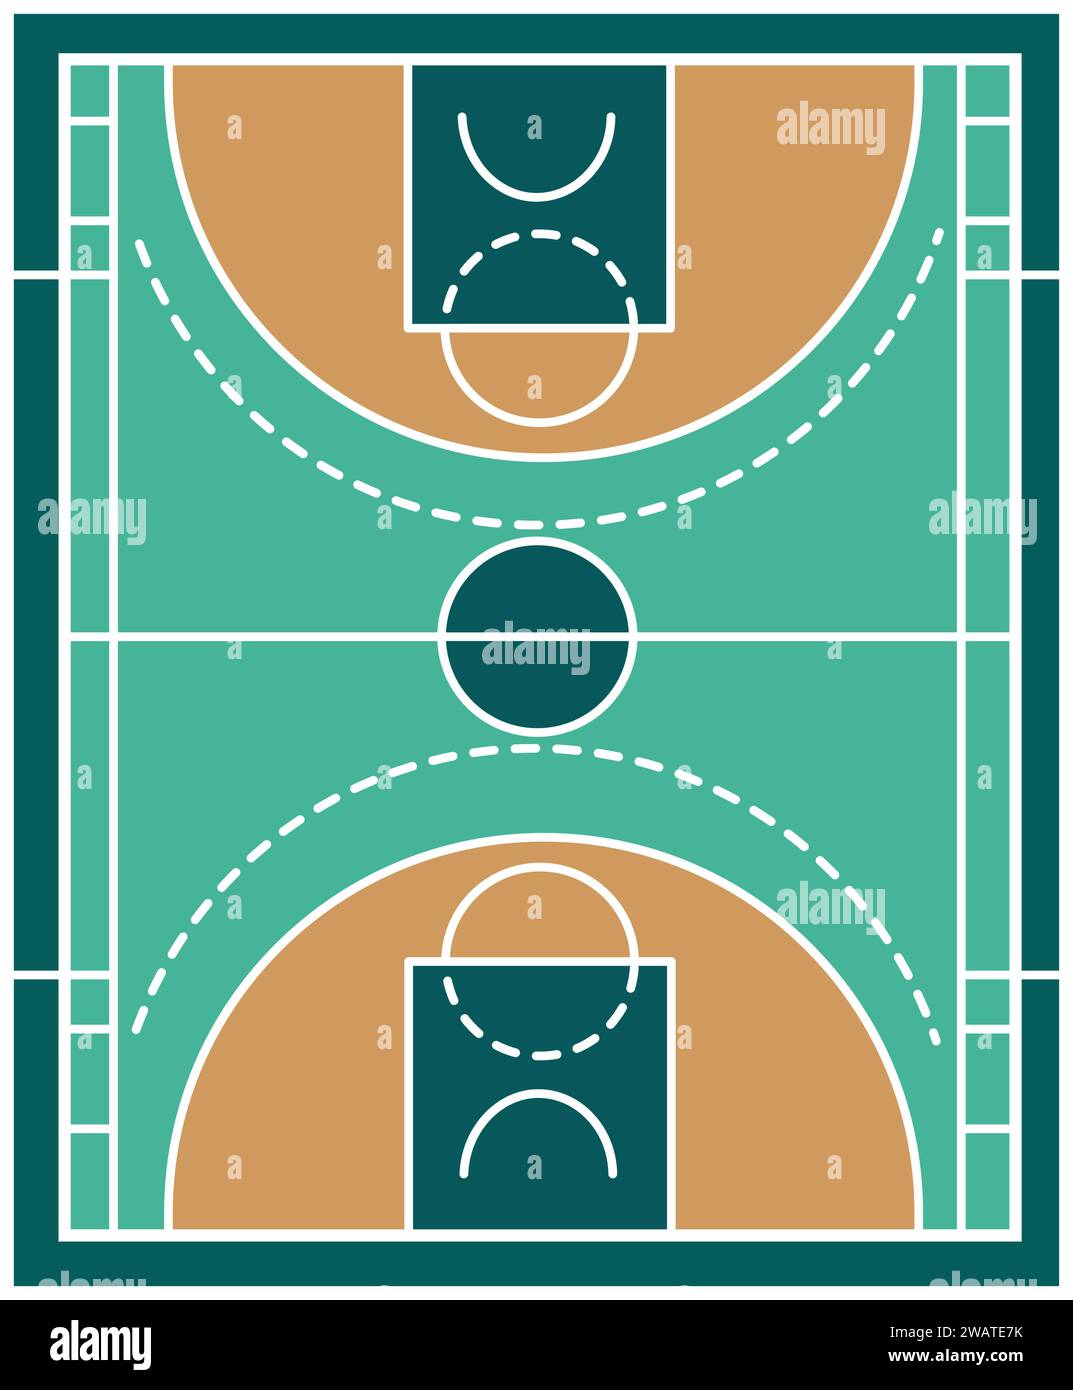 Prova la partita da un punto di vista dall'alto con la vista Vector Top del campo da pallacanestro. Questa illustrazione dettagliata mostra il layout e le dimensioni o. Illustrazione Vettoriale